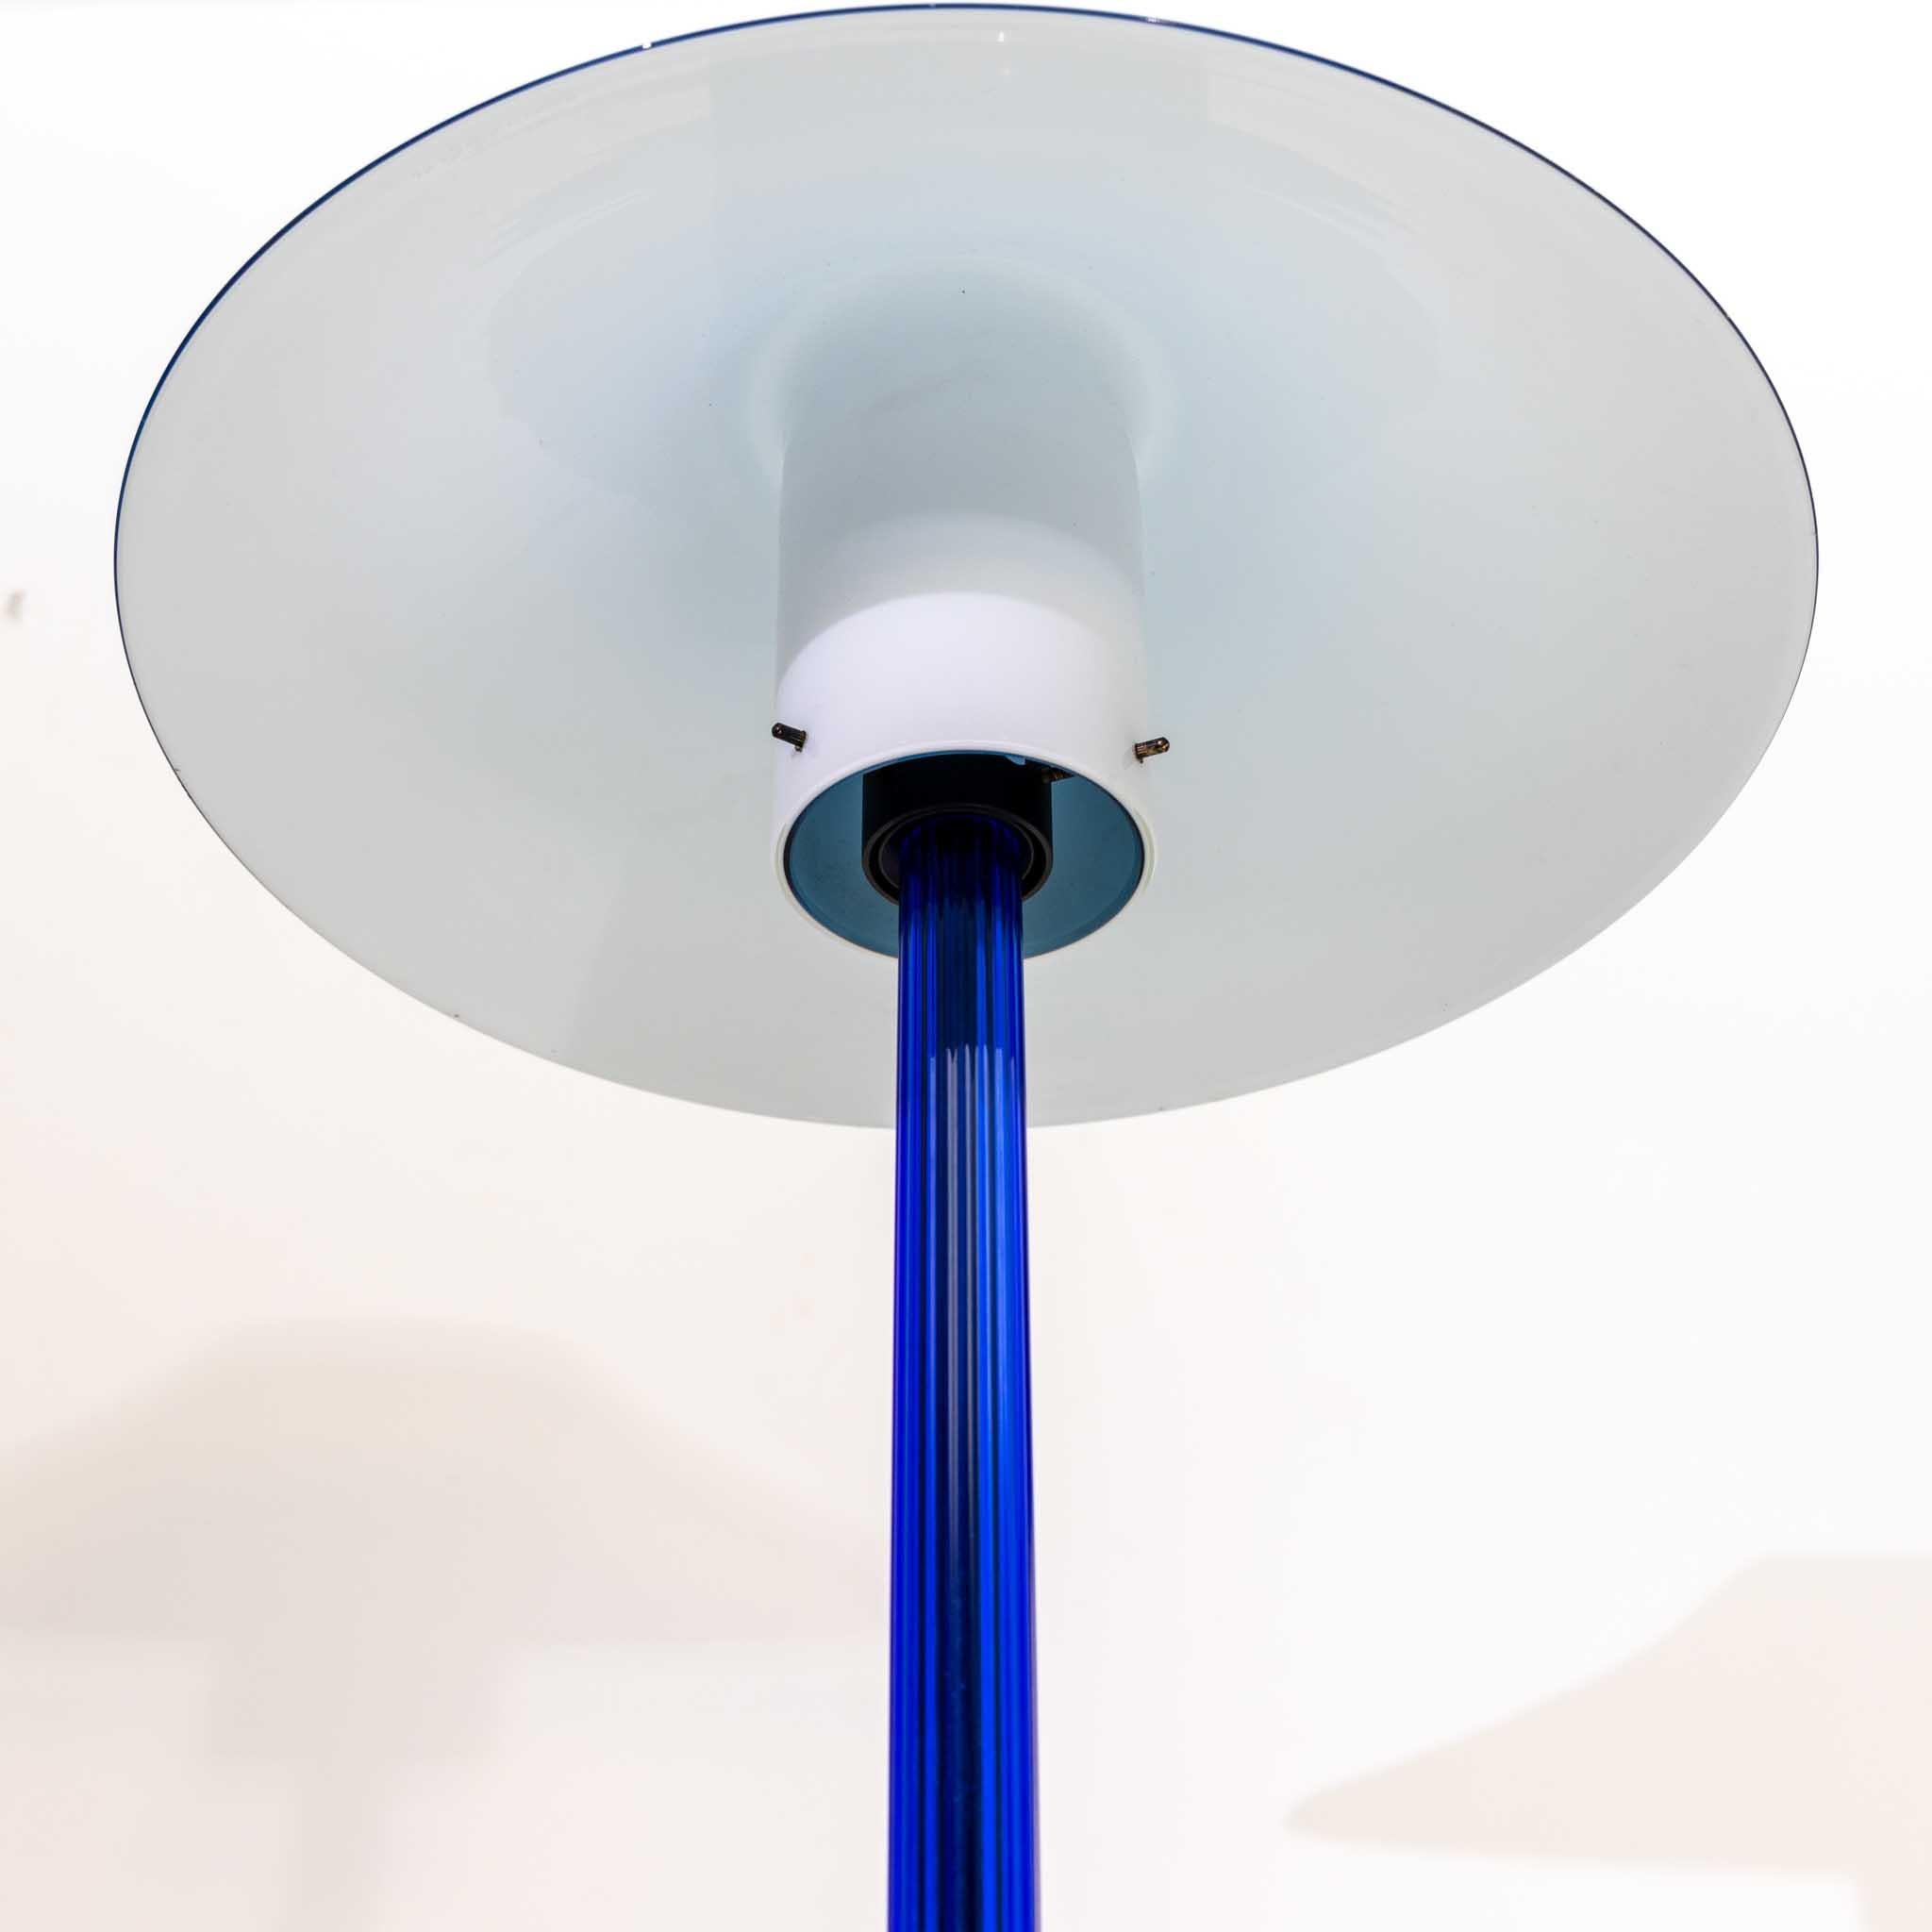 Table lamp Chiara in the blue version with round base, dark blue stem and light blue glass shade with white interior. Giuliana Gramigna: Design Italiano - Repertorio dell'arredo domestico, 1950-2000. Torino 2021, p. 334.